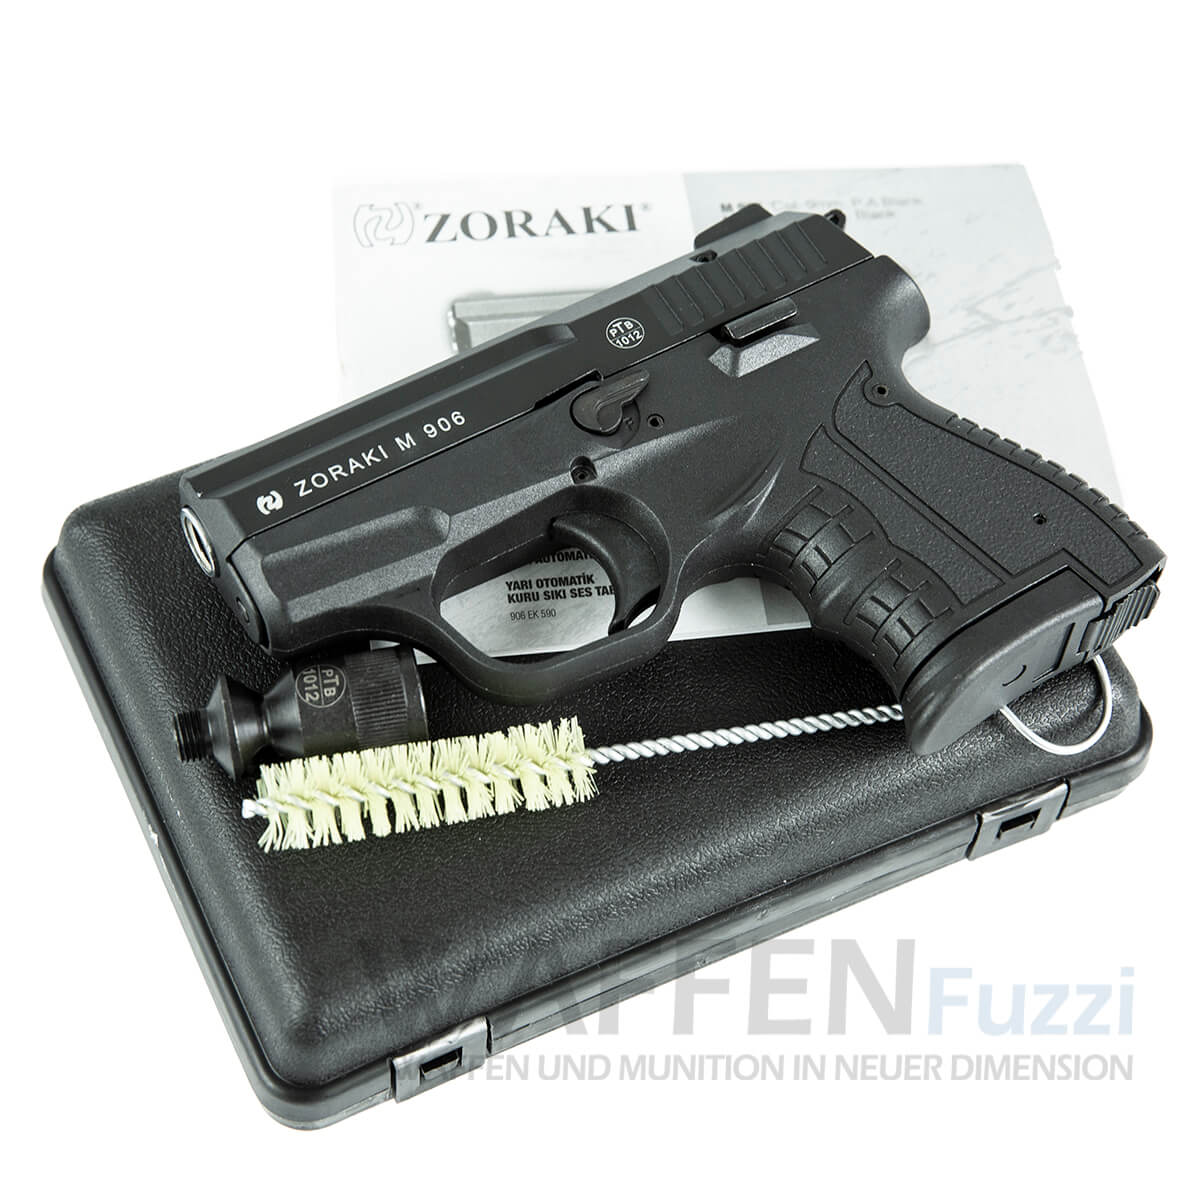 Lieferumfang Zoraki M906 Brüniert / Chrom Schreckschusspistole 9mm PAK